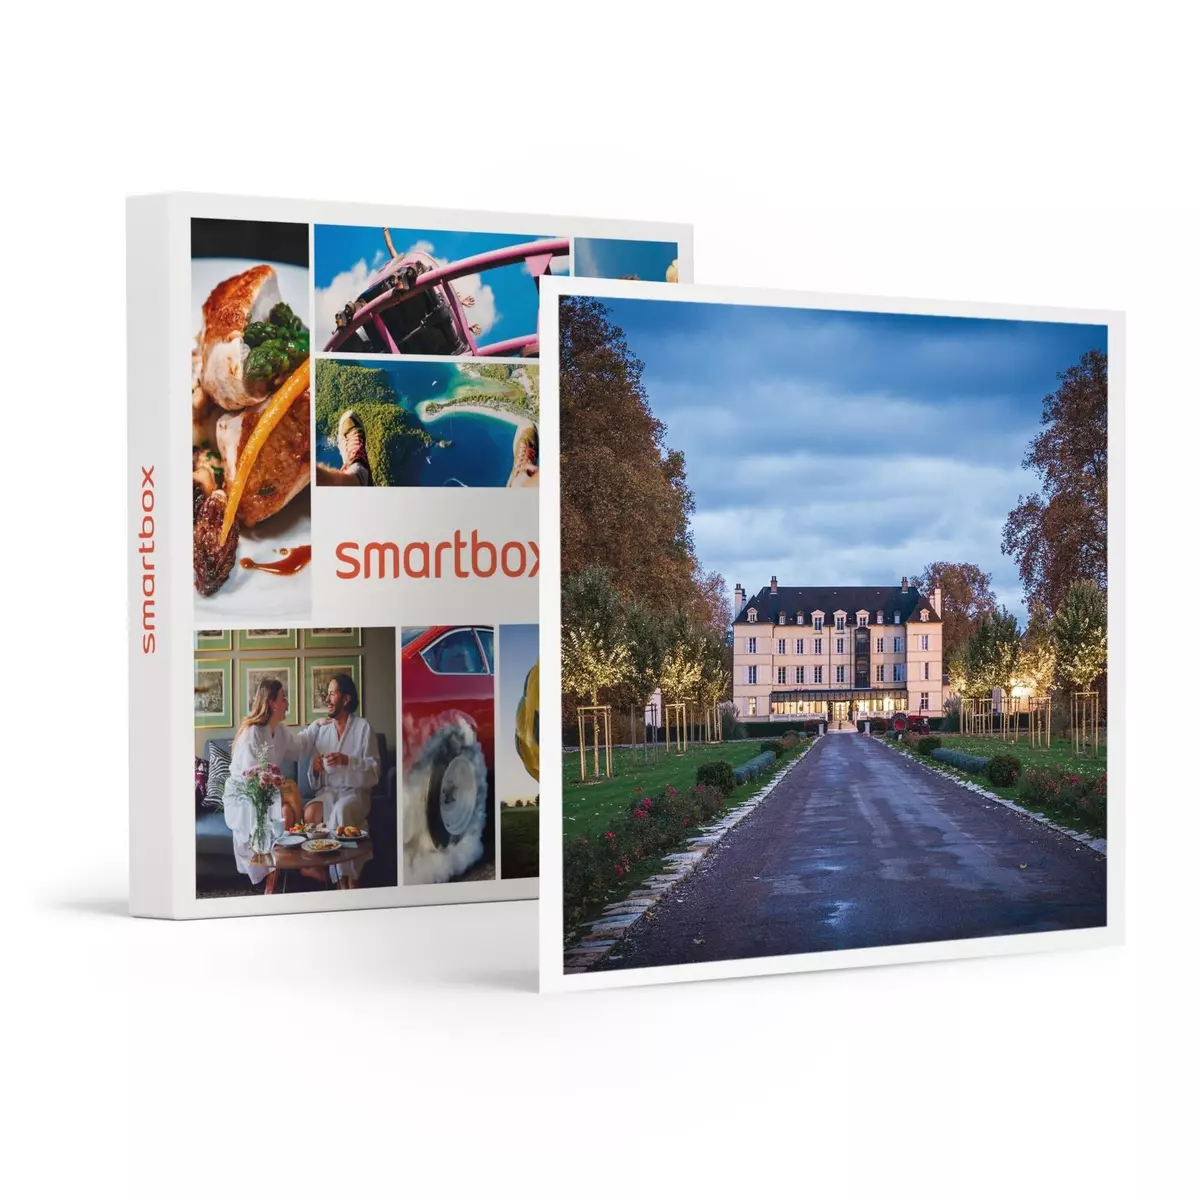 Smartbox 3 jours dans un majestueux château 4* entre Dijon et Beaune - Coffret Cadeau Séjour